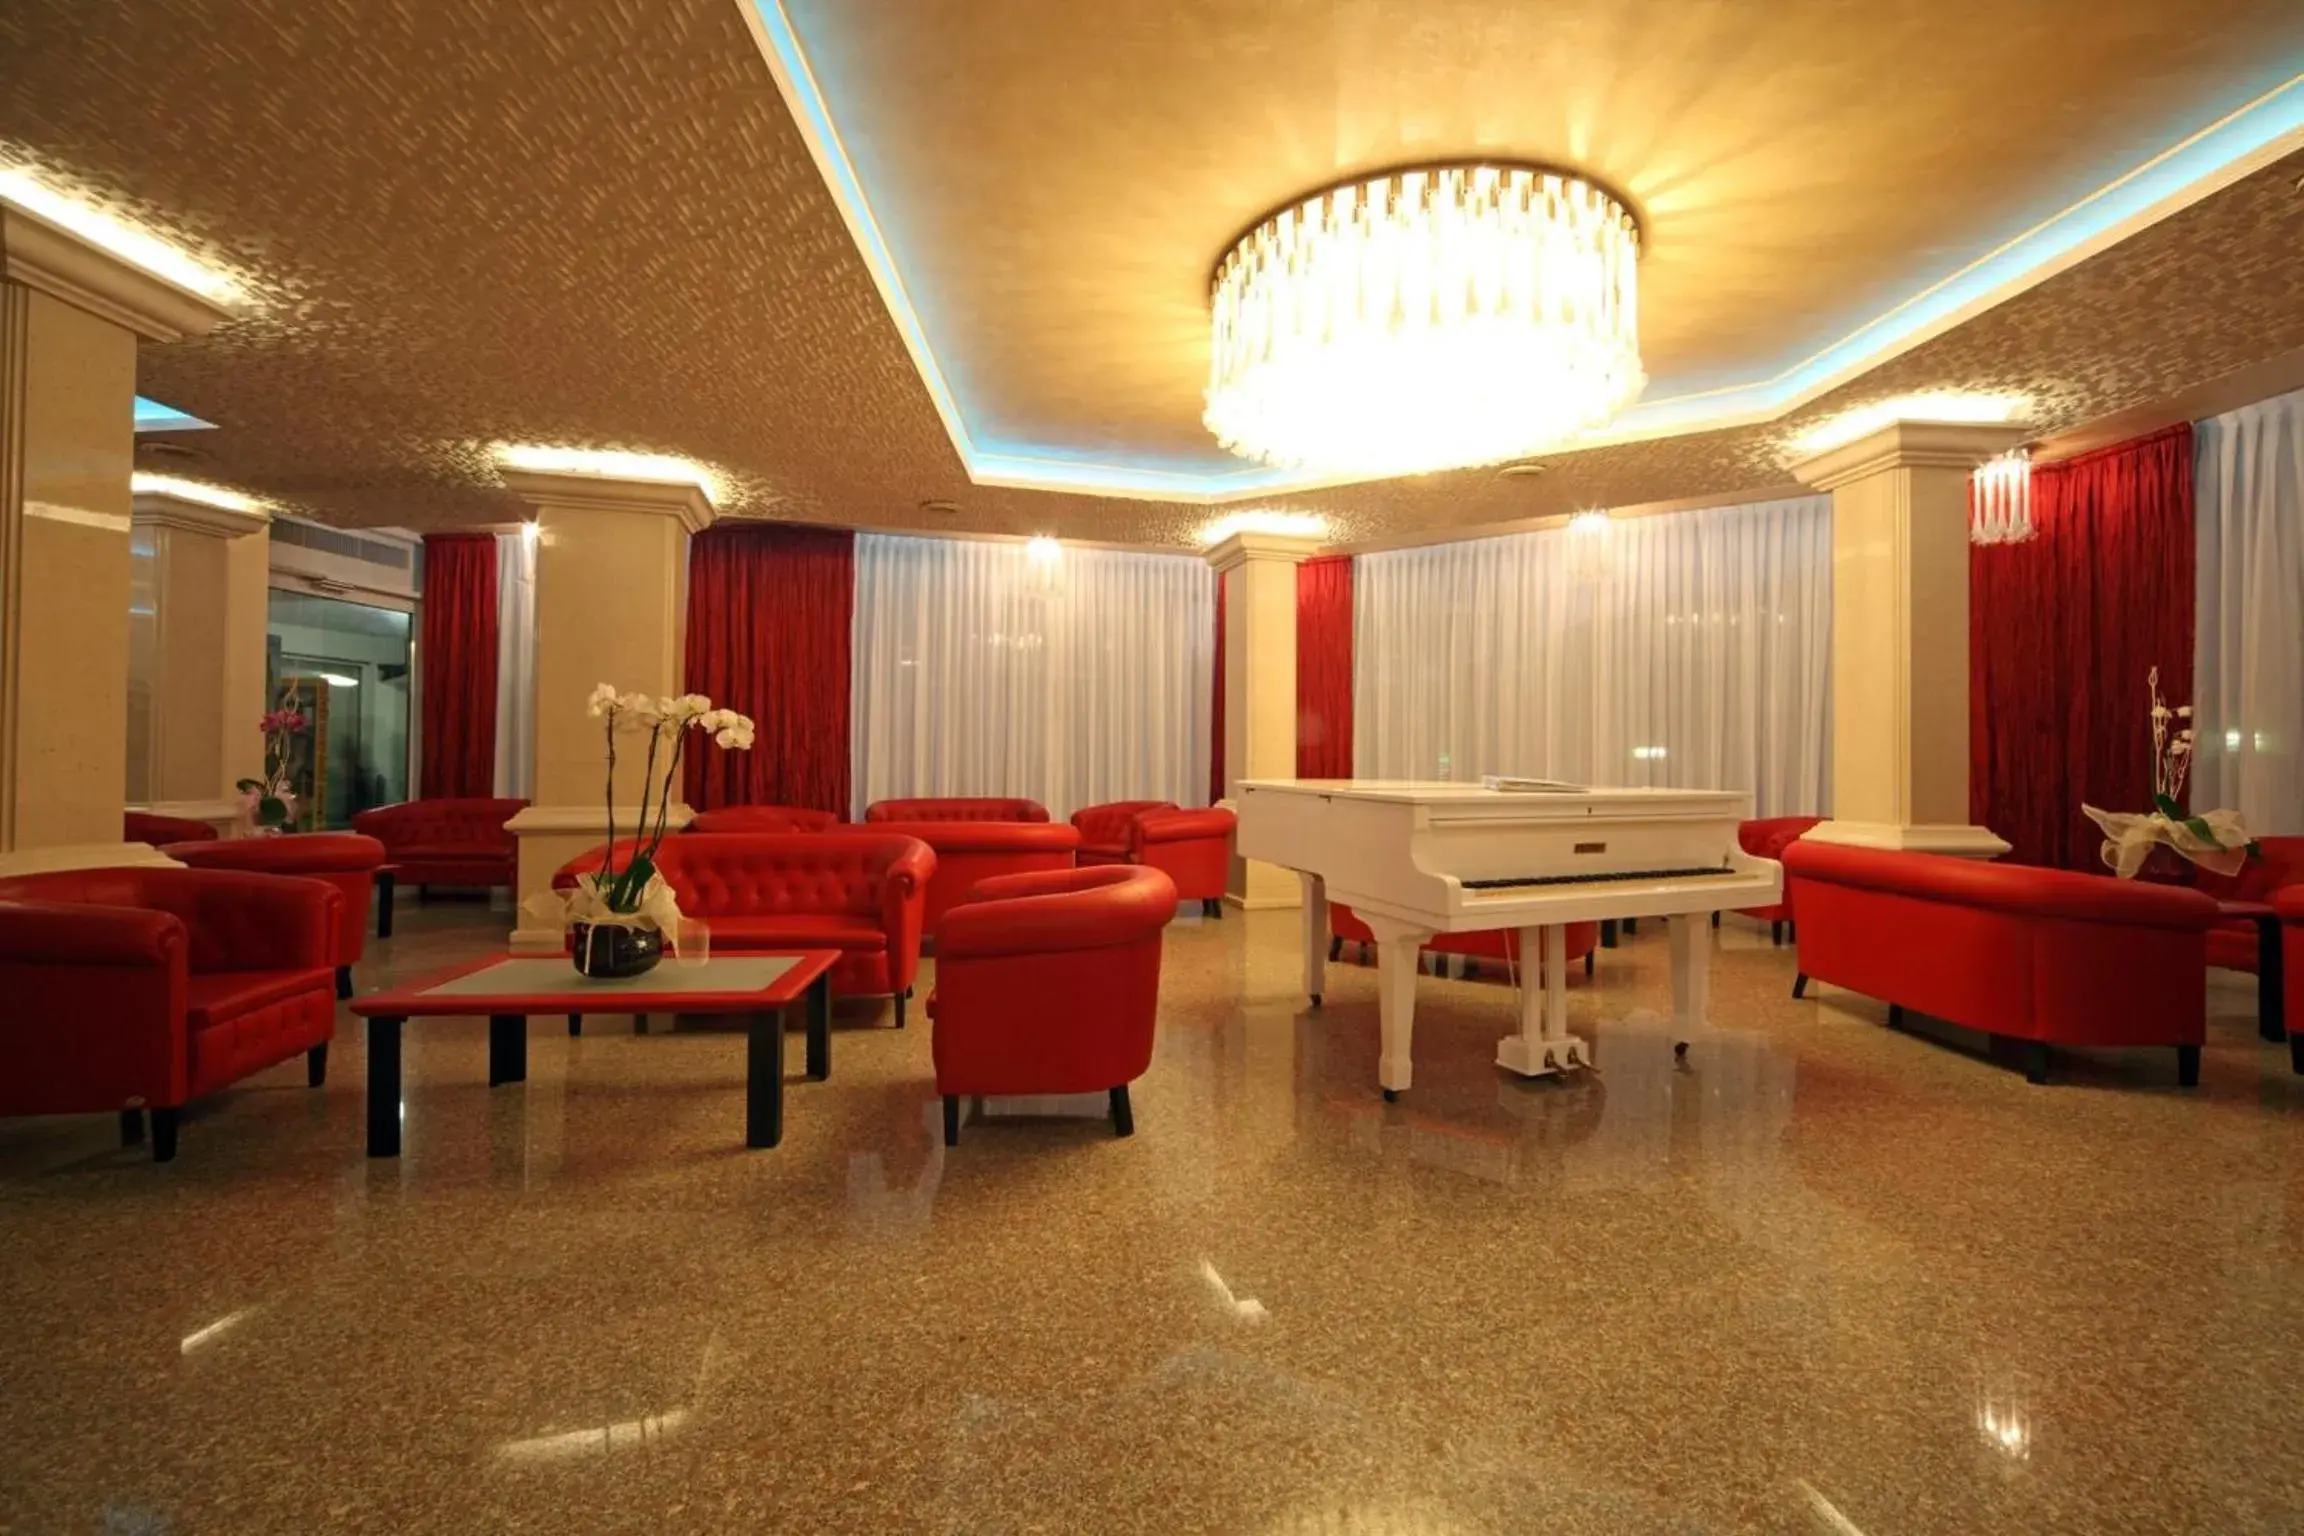 Lobby or reception in Hotel Buratti